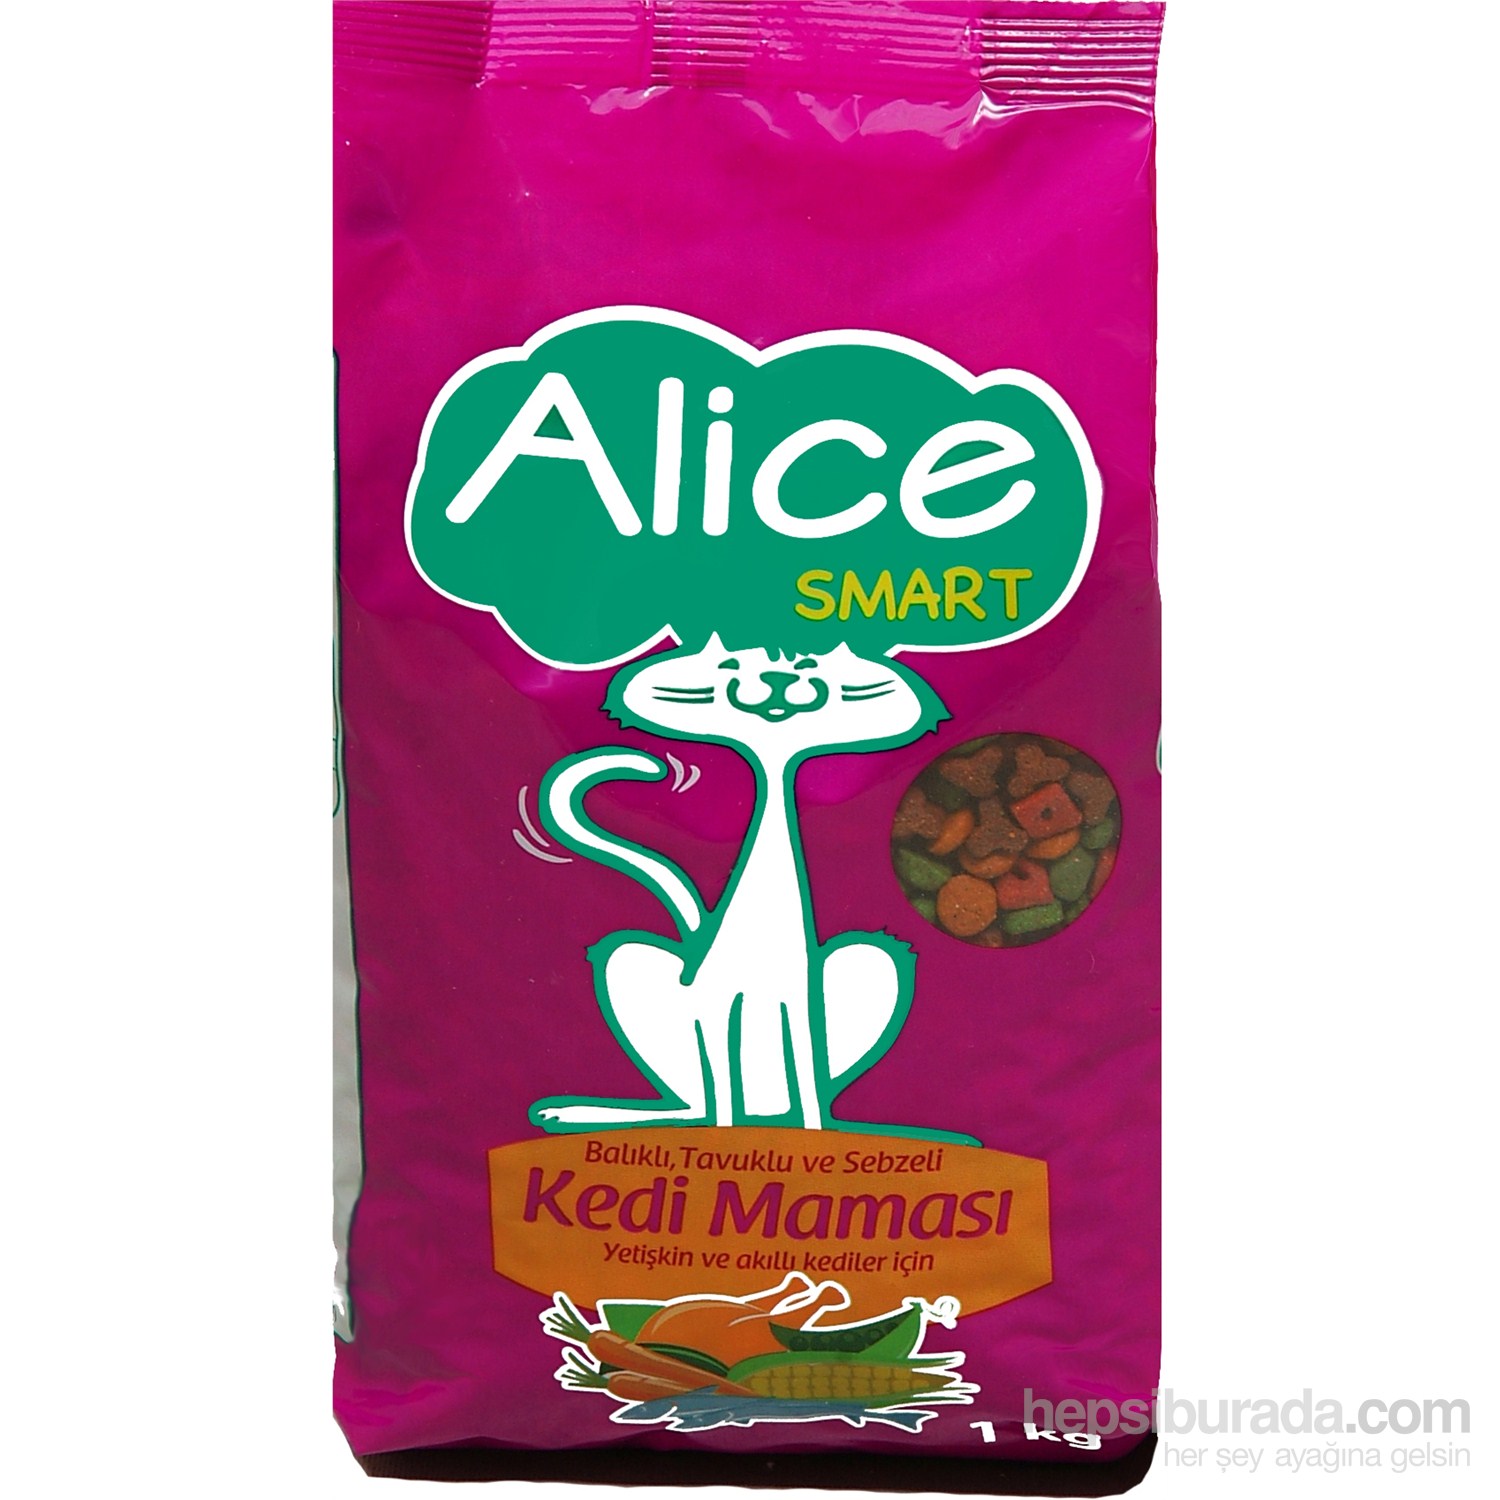 Alice Smart Tavuklu & Balıklı & Sebzeli Kedi Maması 1 Kg